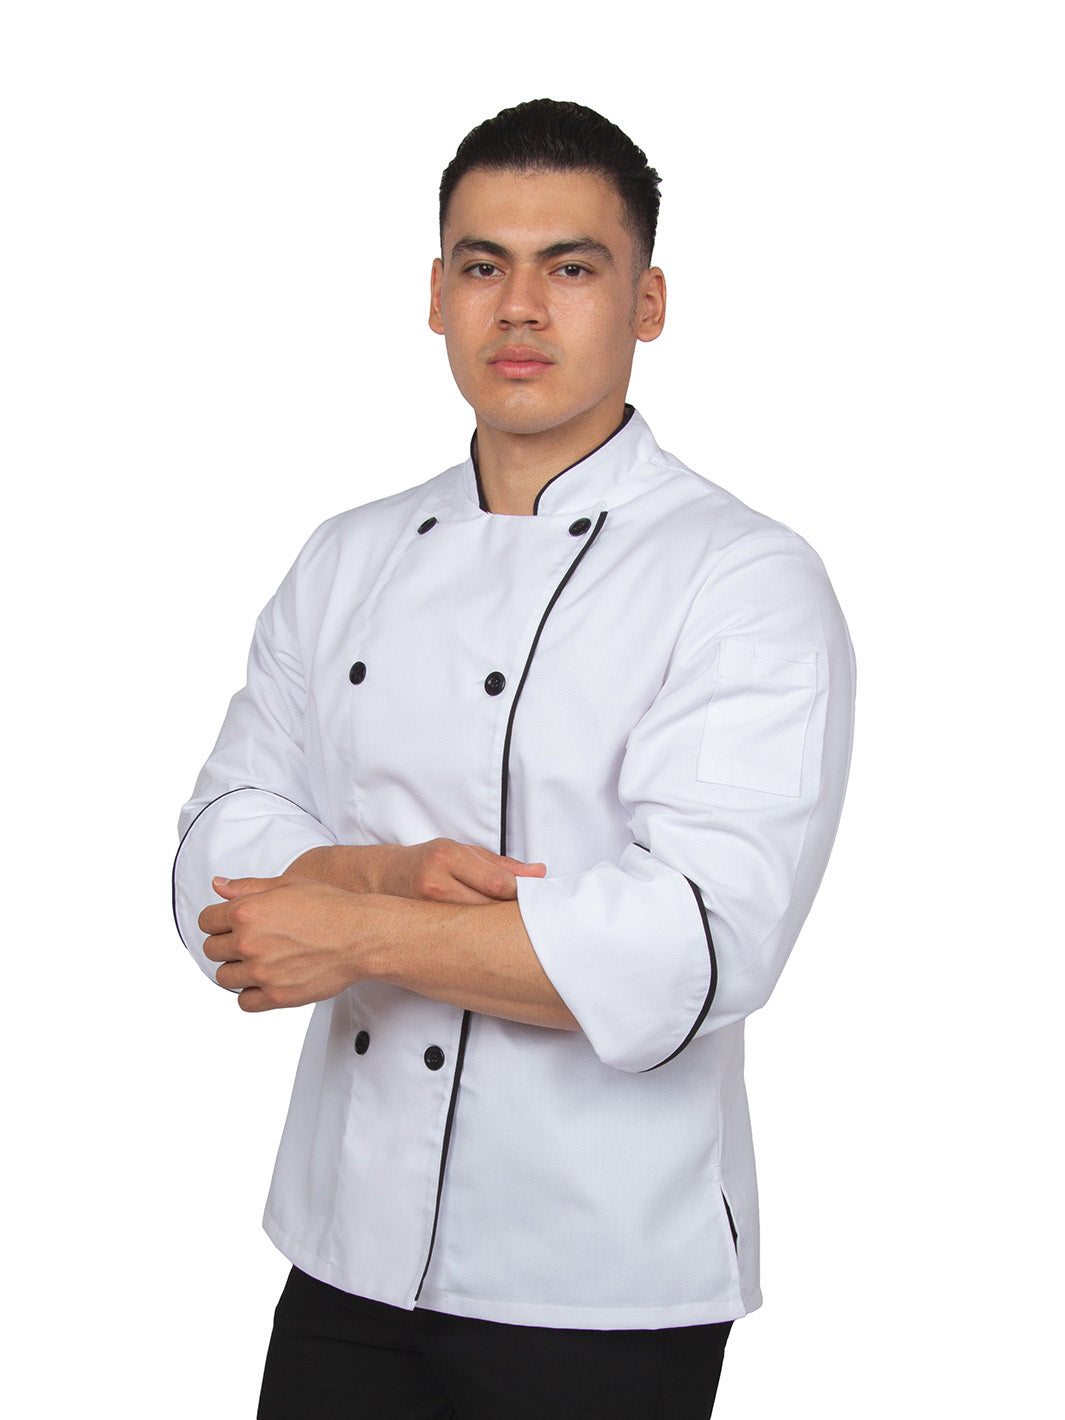 Hombre vistiendo filipina de chef unisex color blanco con vistas negras, mangas de puño redondeado, doble fila de botones con cruce reversible, y bolsa en manga izquierda. 